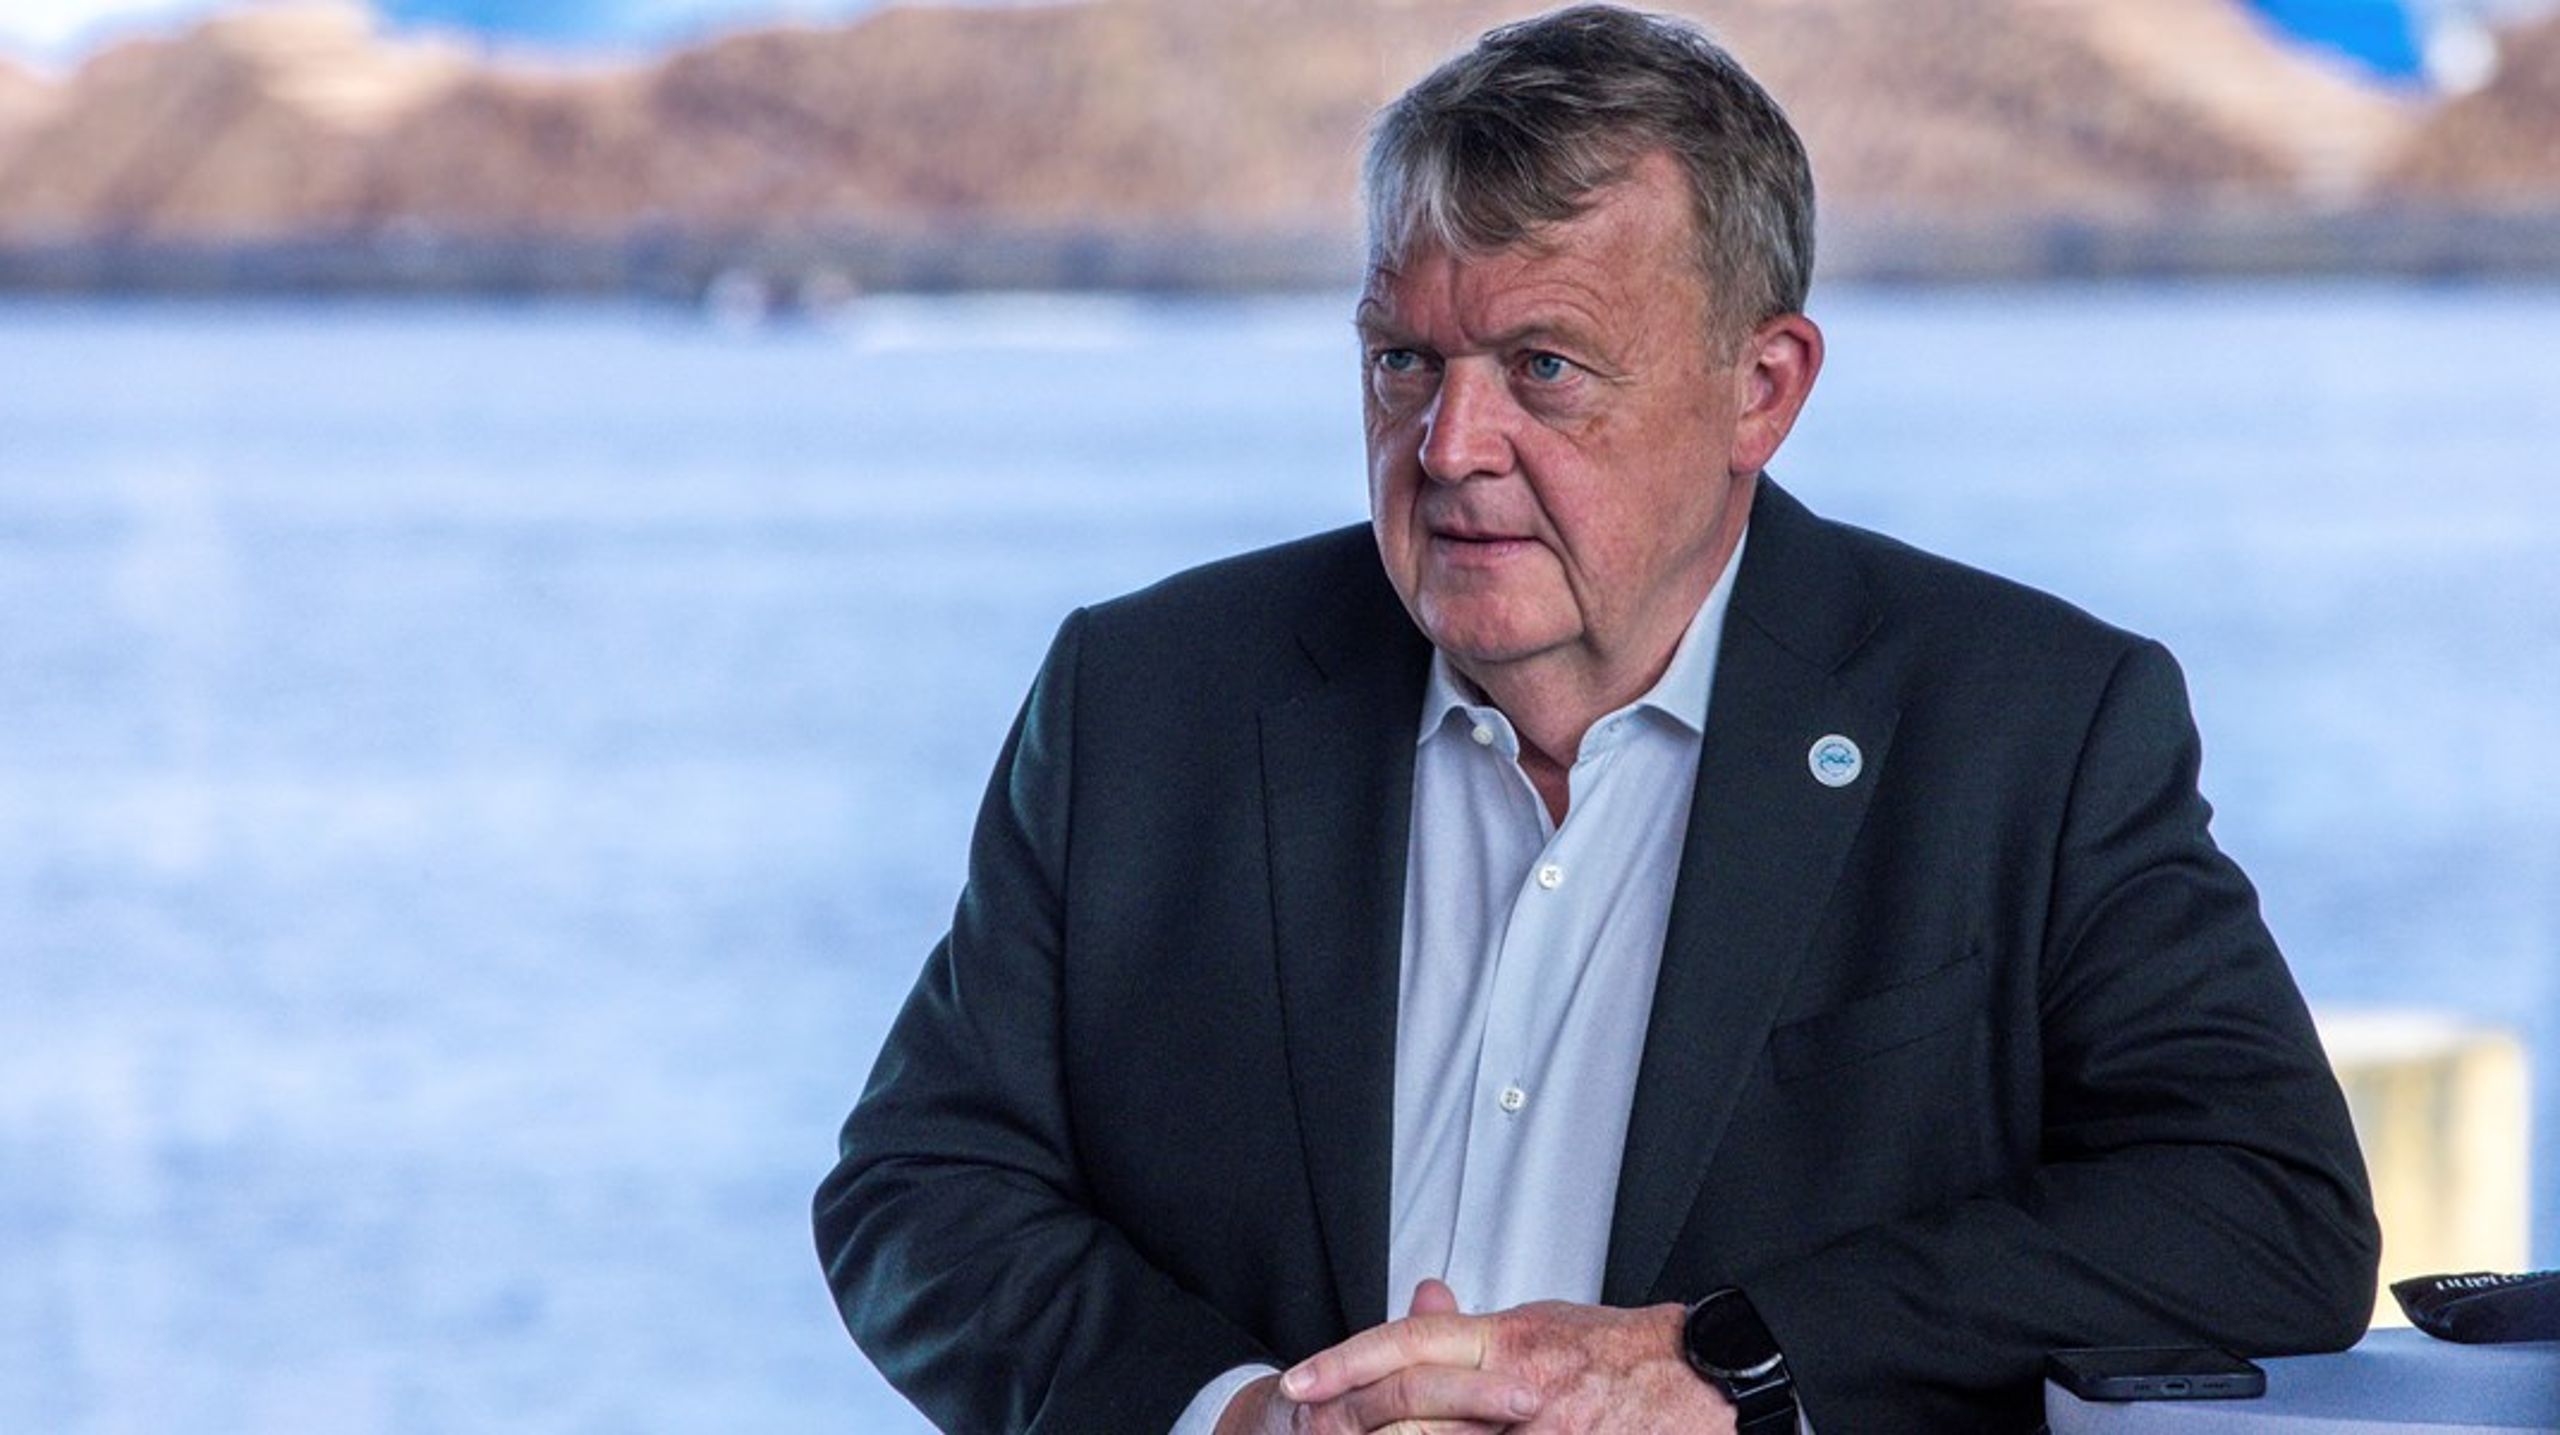 Danmarks utenriksminister Lars Løkke Rasmussen (Venstre) er for tiden er travelt opptatt med å forberede arbeidet med en ny dansk europapolitikk, som kan danne grunnlaget for det danske formannskapet i EU våren 2025, skriver John Iversen.